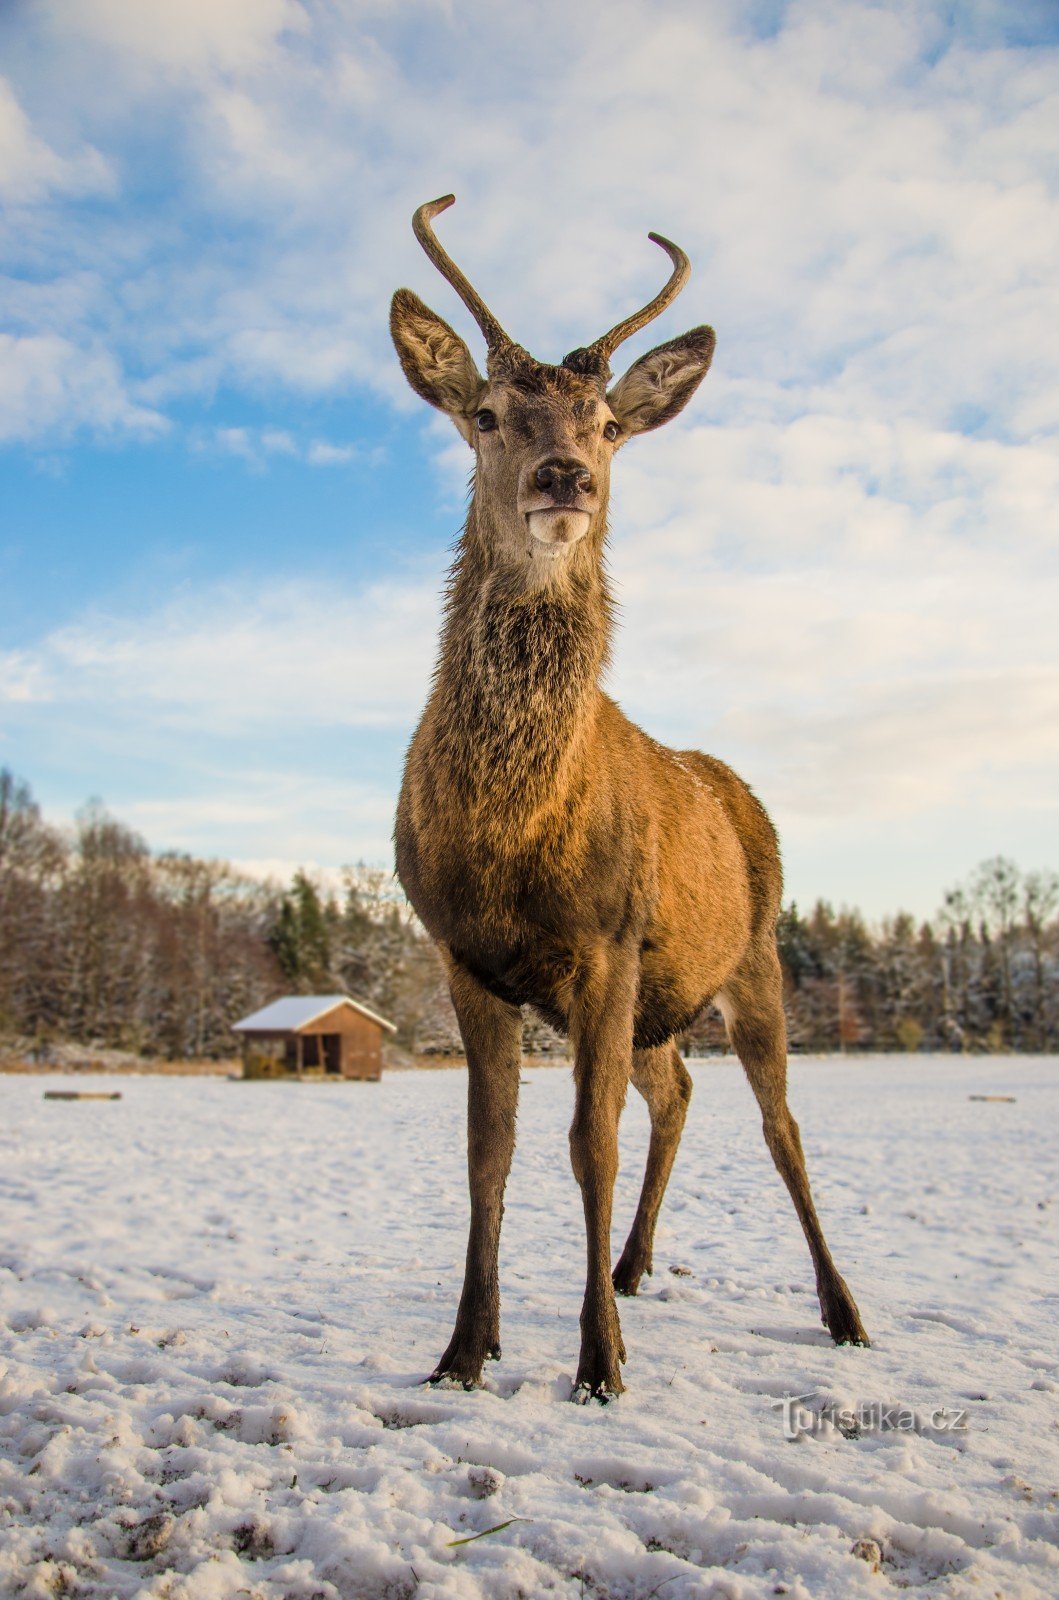 Deer Matěj the Younger trong khu bảo tồn thiên nhiên gần nhà nghỉ săn bắn cũ và khu bảo tồn rừng Viselec trong huyện